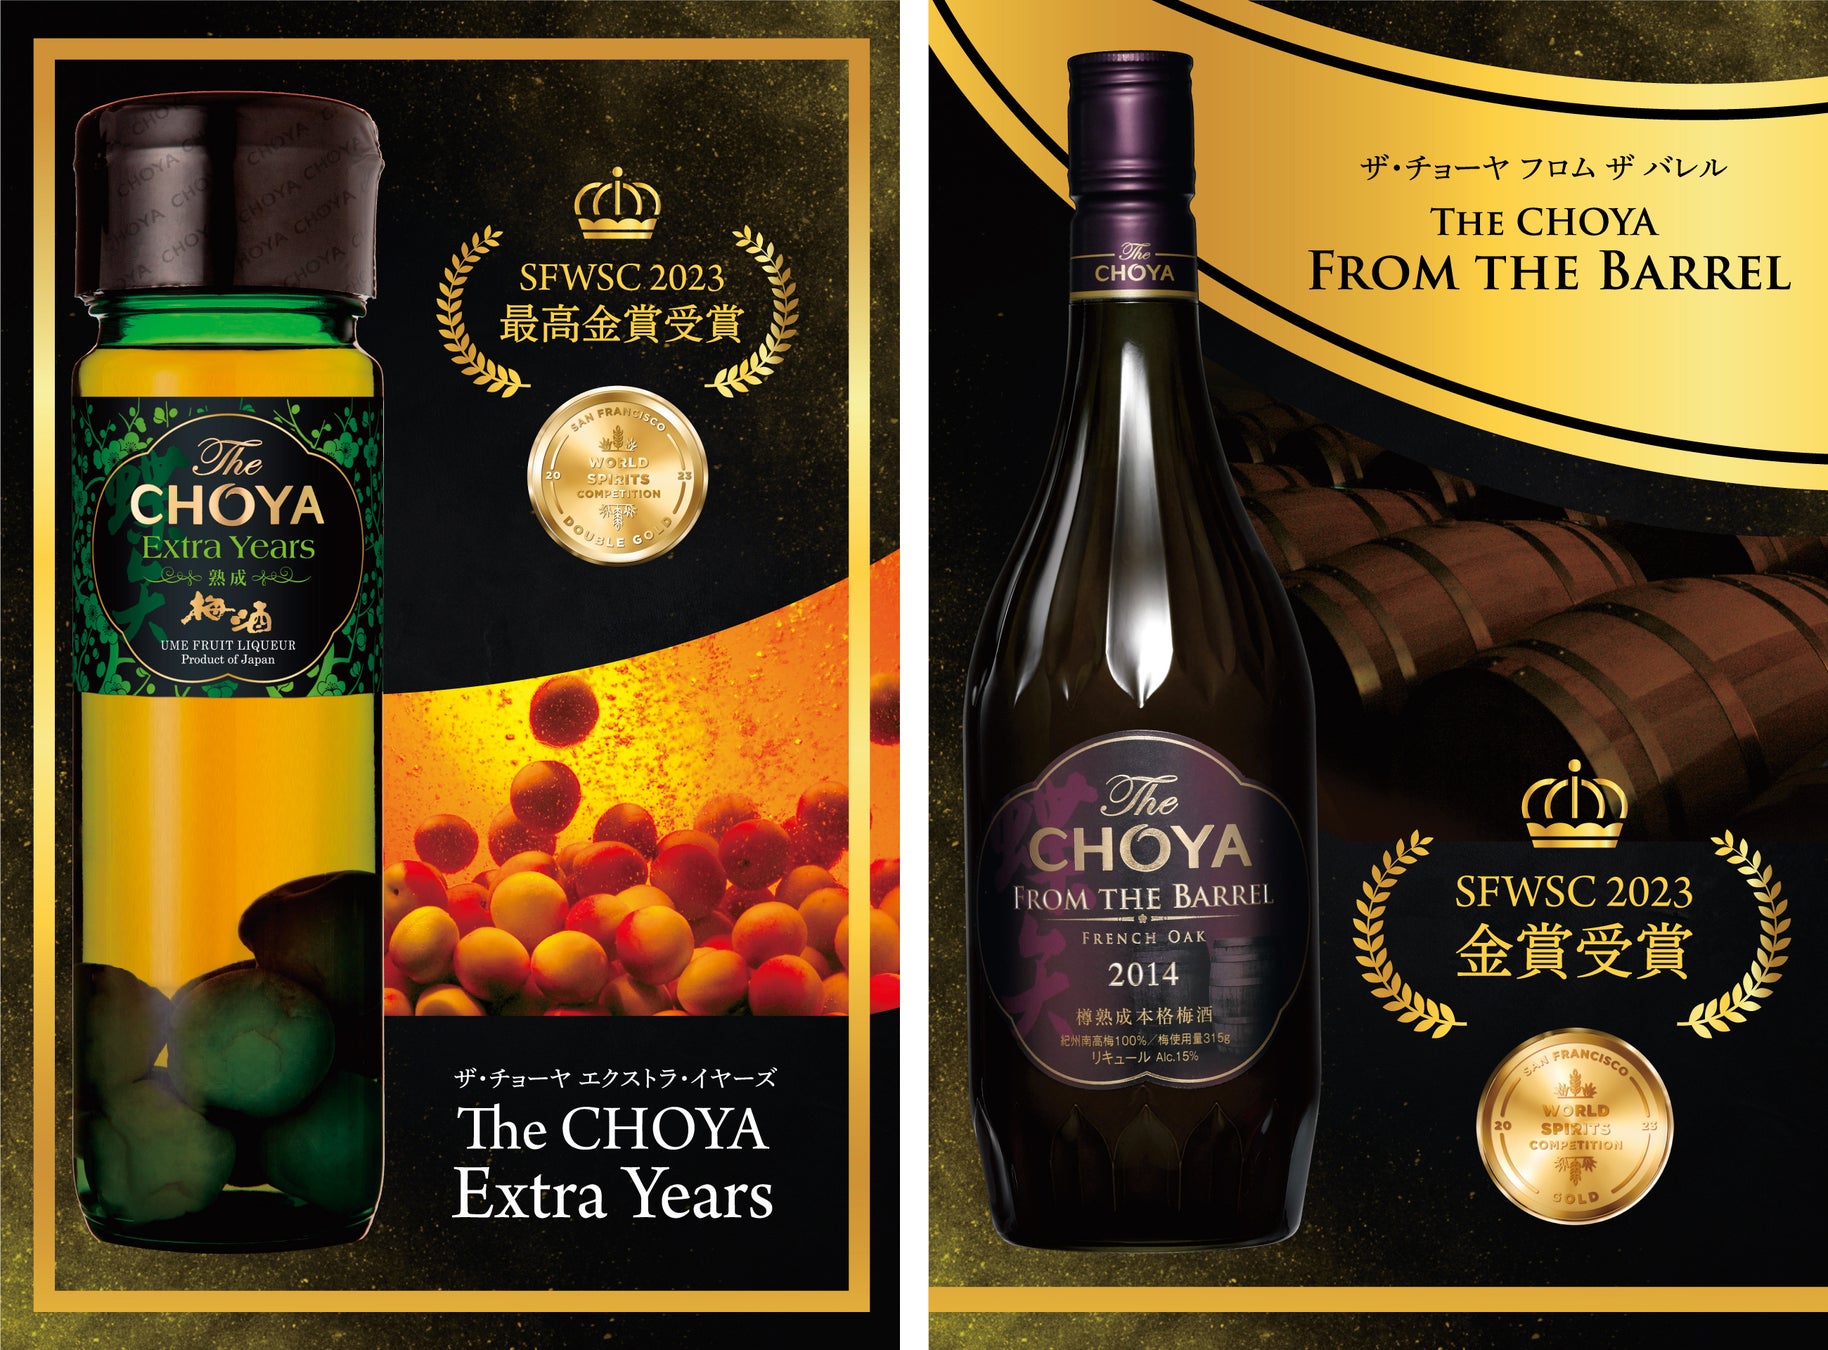 国際的な酒類品評会「SFWSC2023」にてチョーヤの本格梅酒「The CHOYA Extra Years」が最高金賞、「The CHOYA FROM THE BARREL」が金賞を受賞